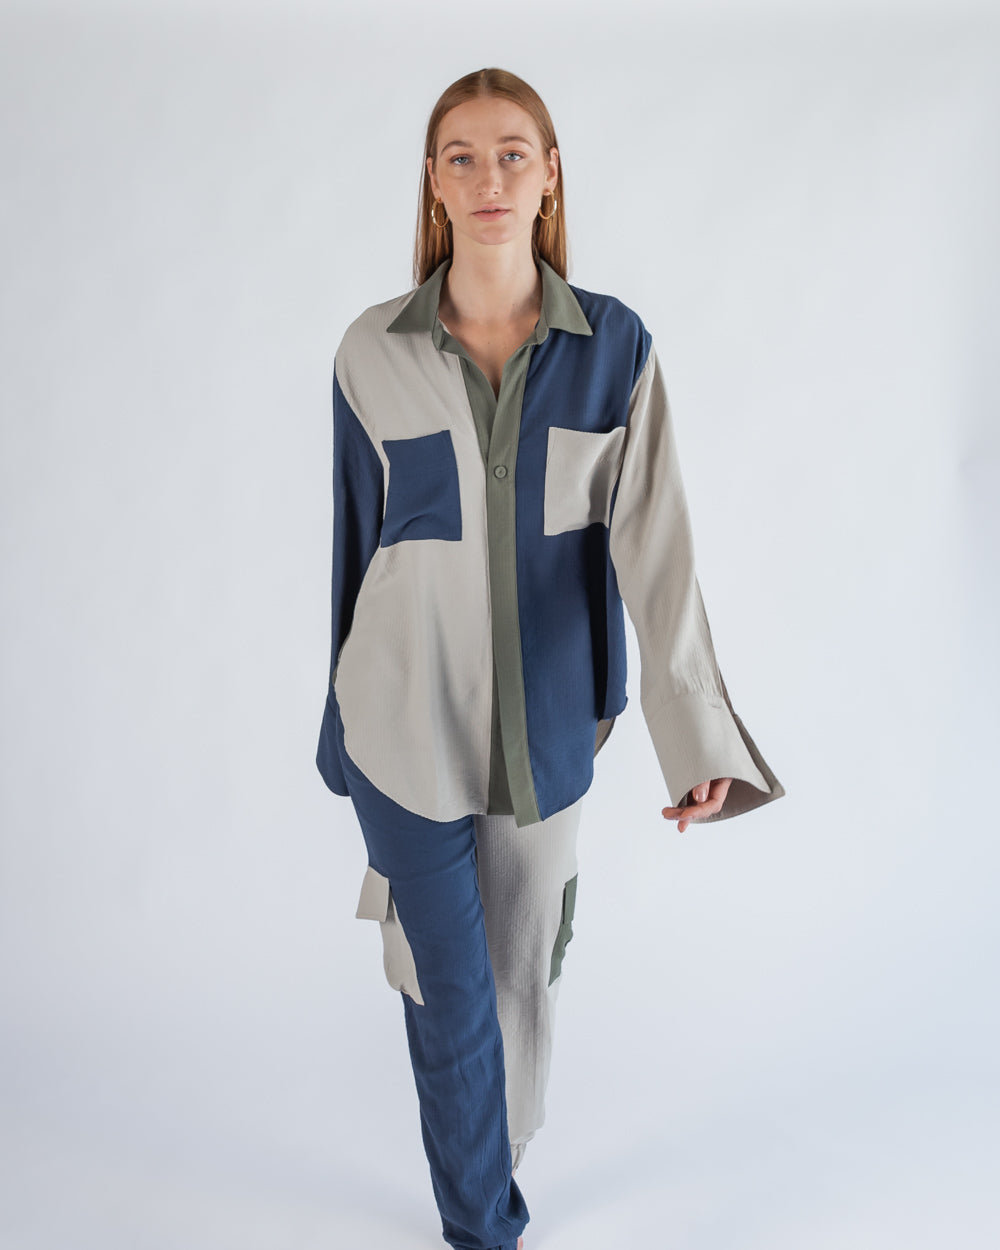  Camisa para mujer comoda, facil de usar, fresca y  hecha en mexico  Camisa con combinacion de colores beige, verde olivo y azul marino.